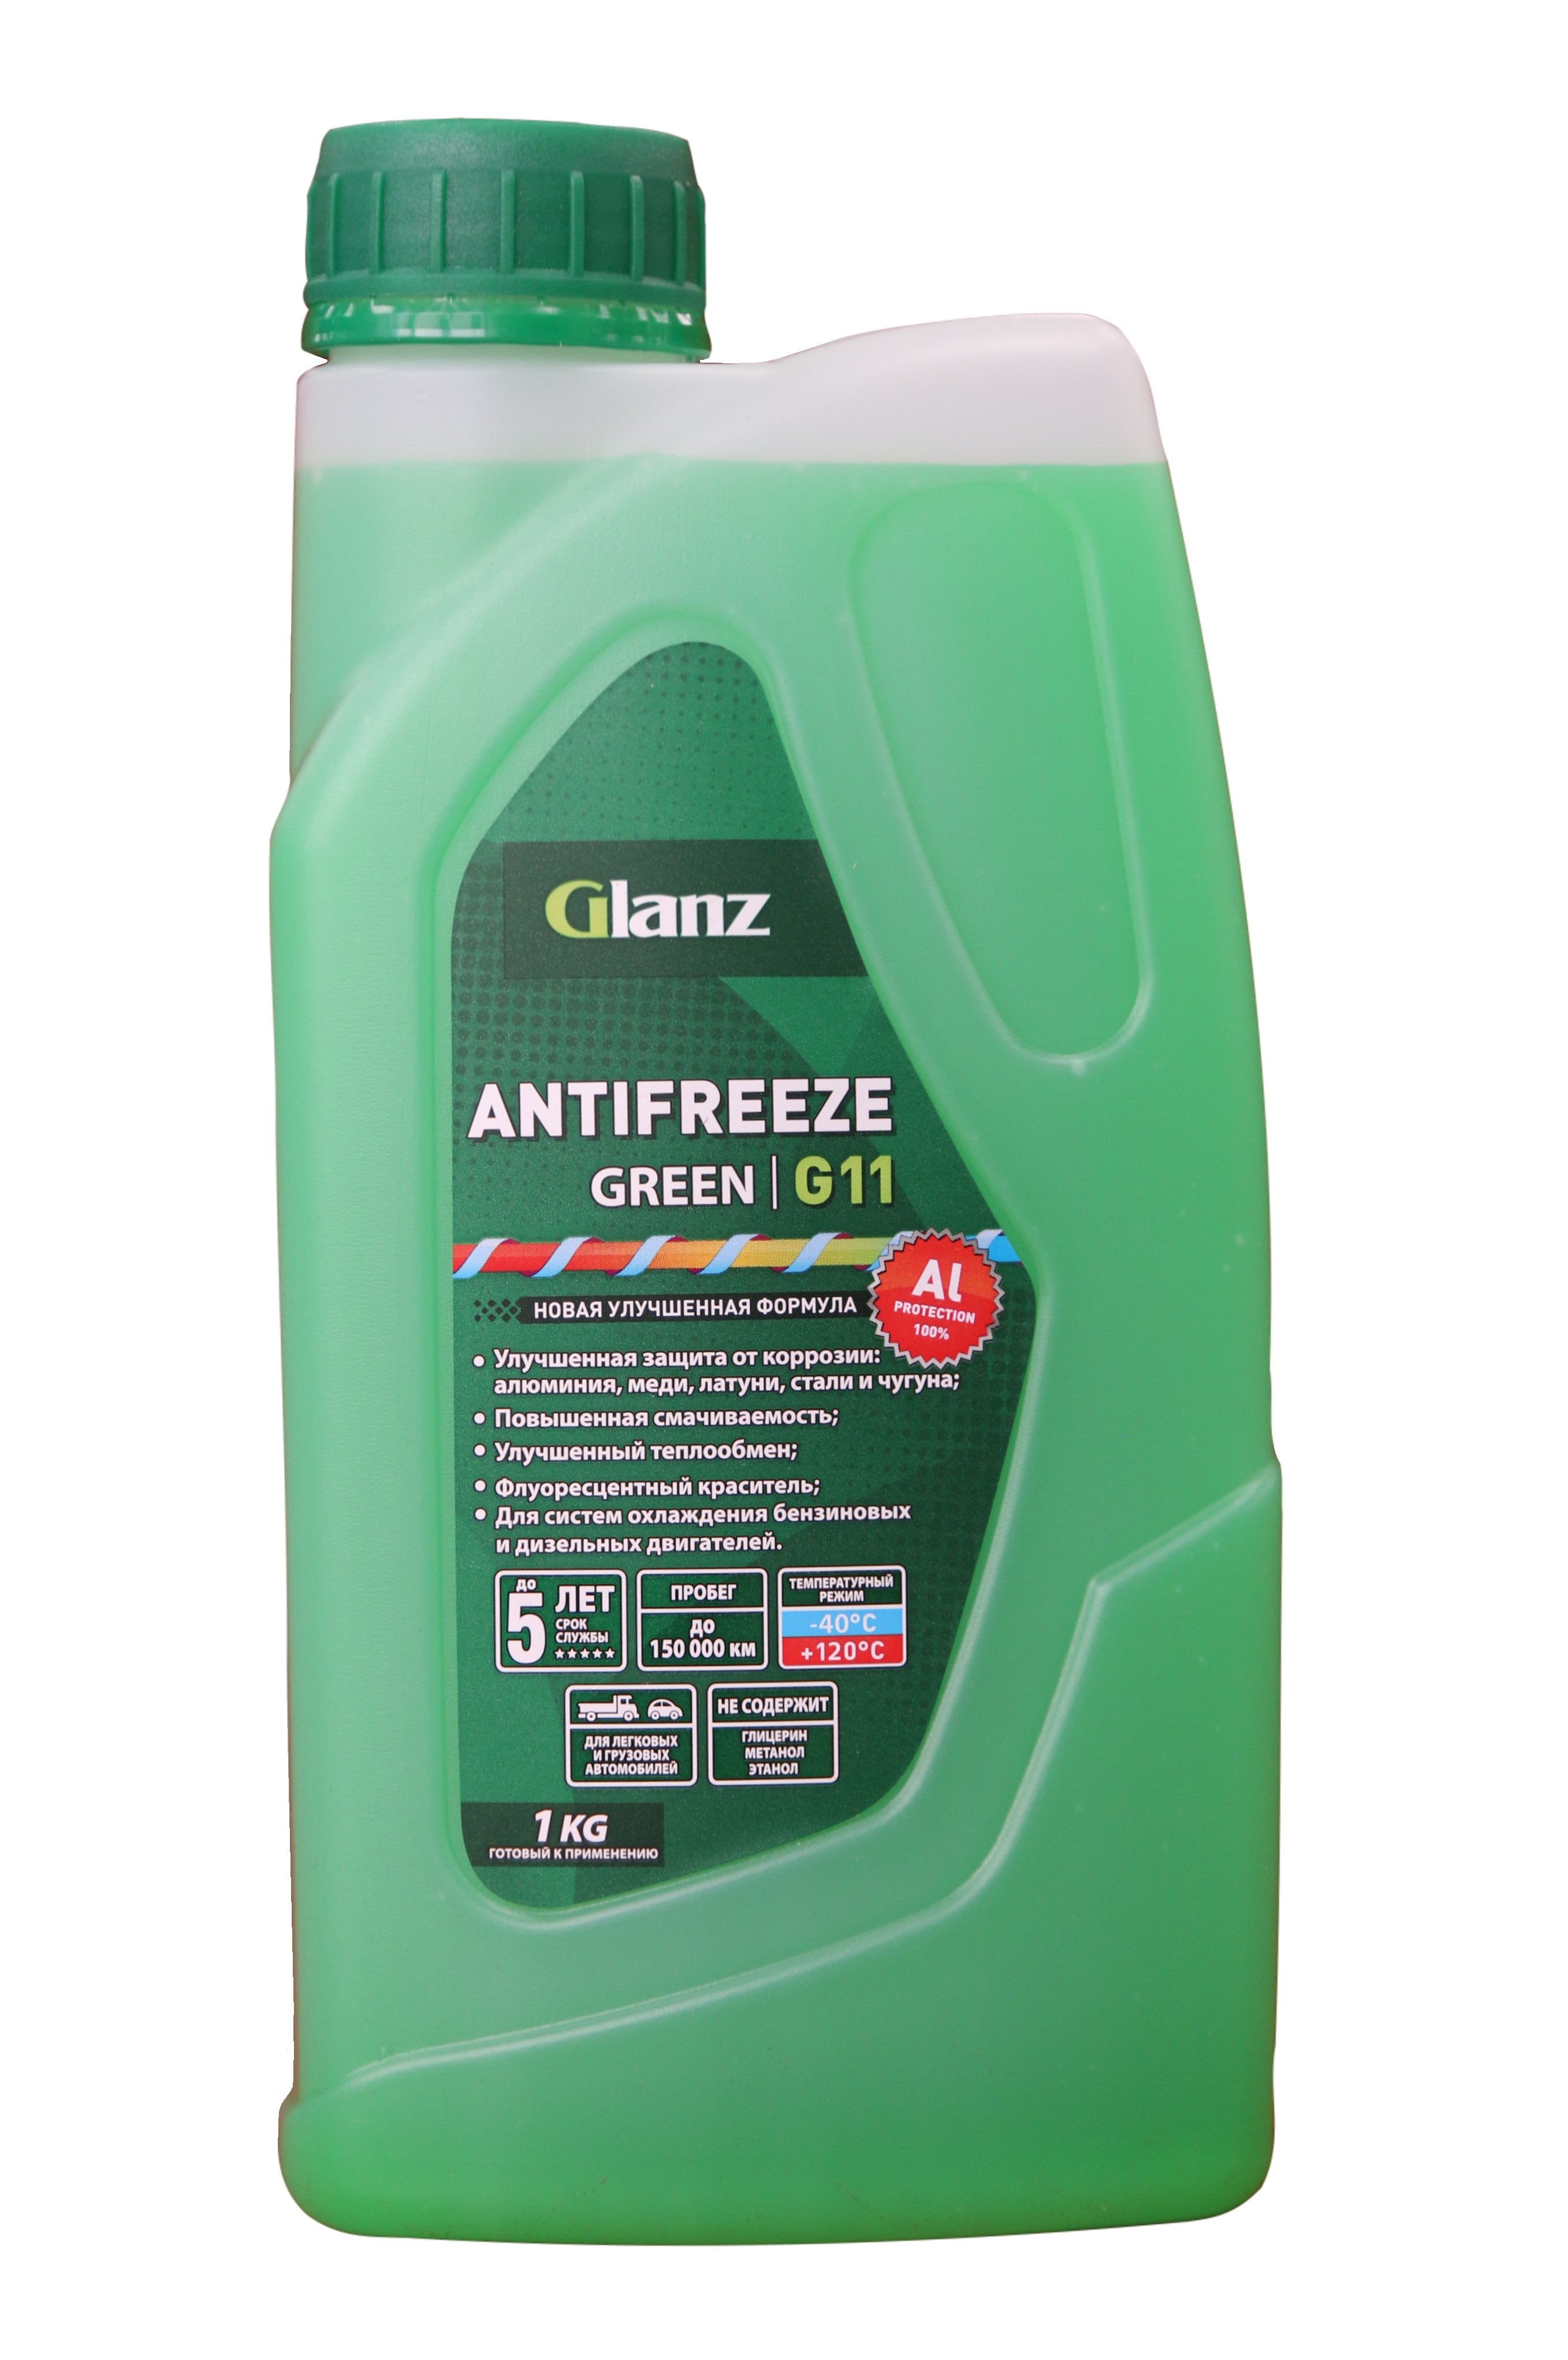  Glanz G11 (зеленый) | Продукт Автохим